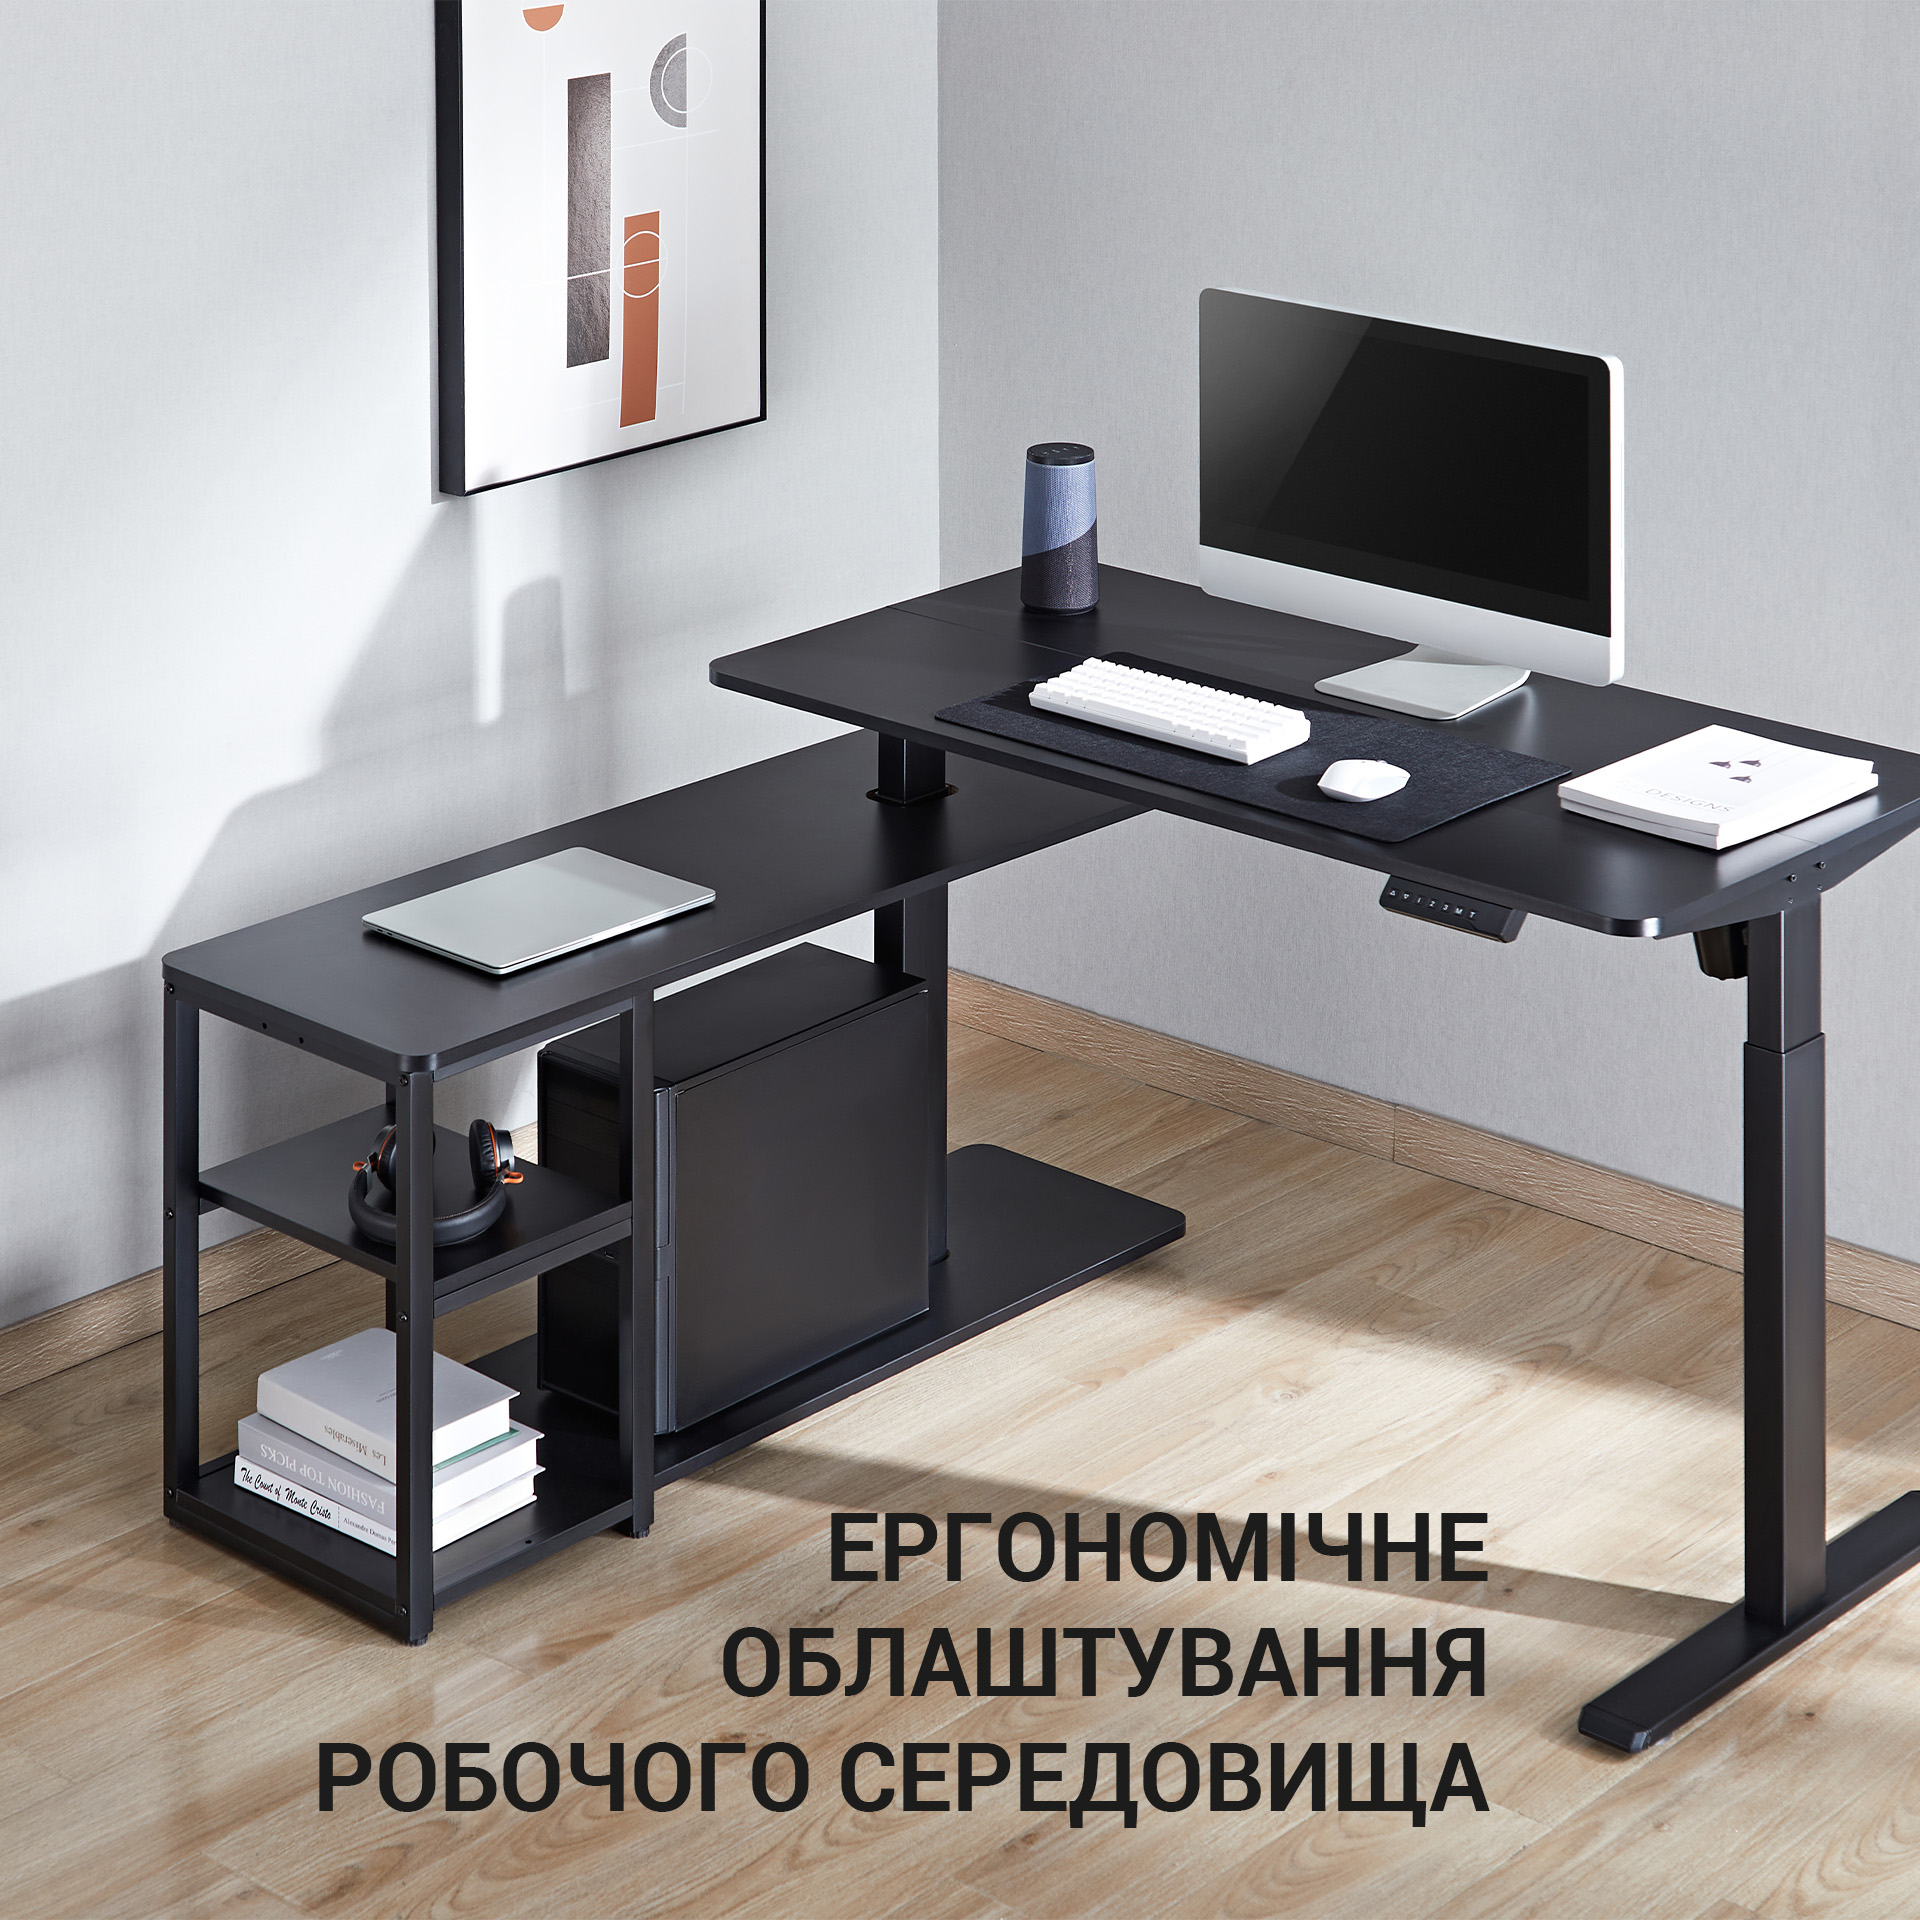 Комп'ютерний стіл OfficePro з електрорегулюванням висоти чорний (ODE119B) - фото 17